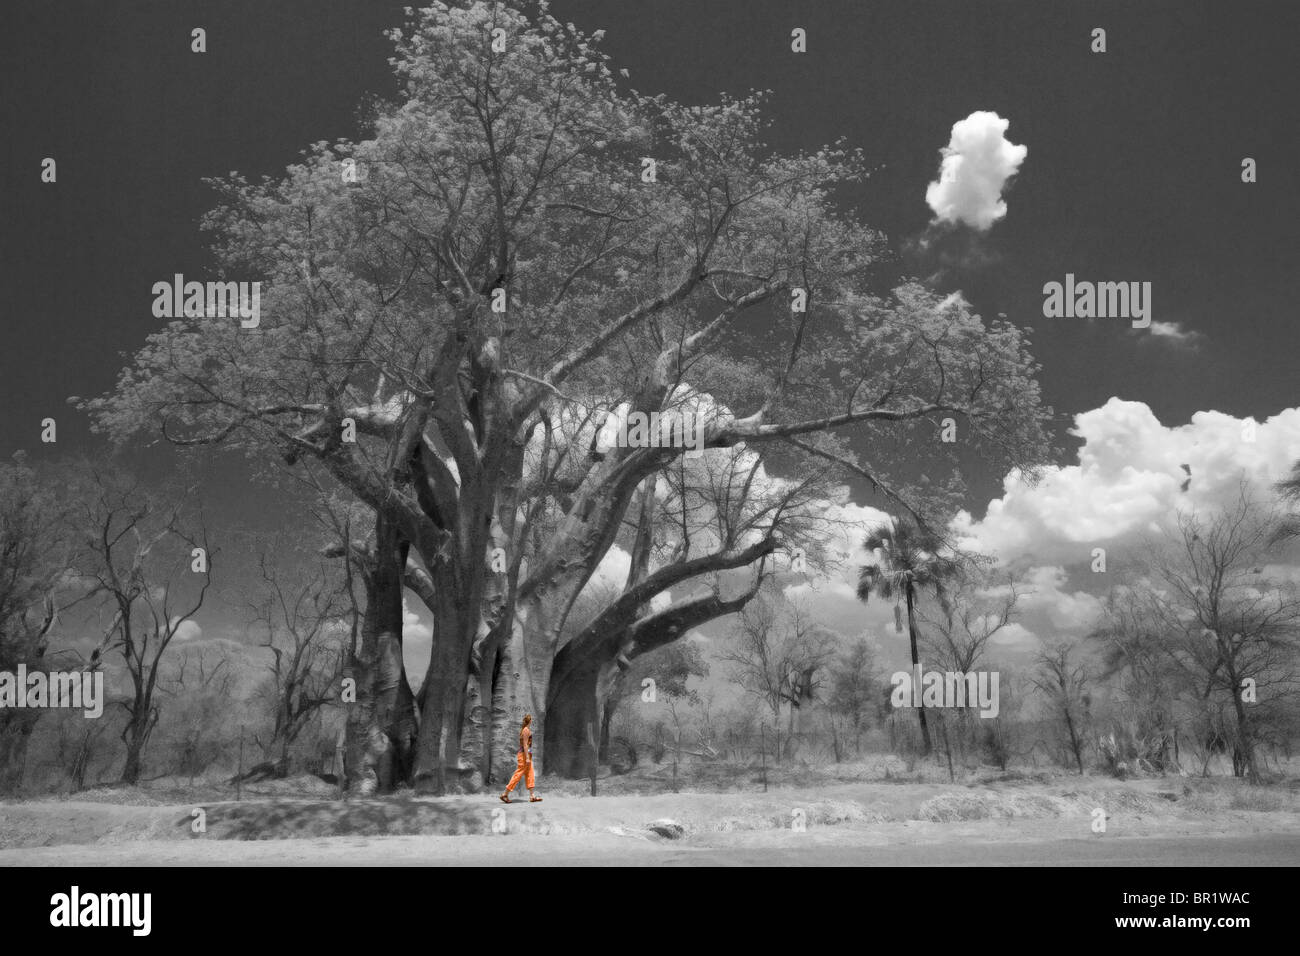 Eine junge Frau untersucht das Ausmaß einer afrikanischen Baobab-Baum in der Nähe von Victoria Falls, Simbabwe (isolierte Farbe schwarz und weiß). Stockfoto